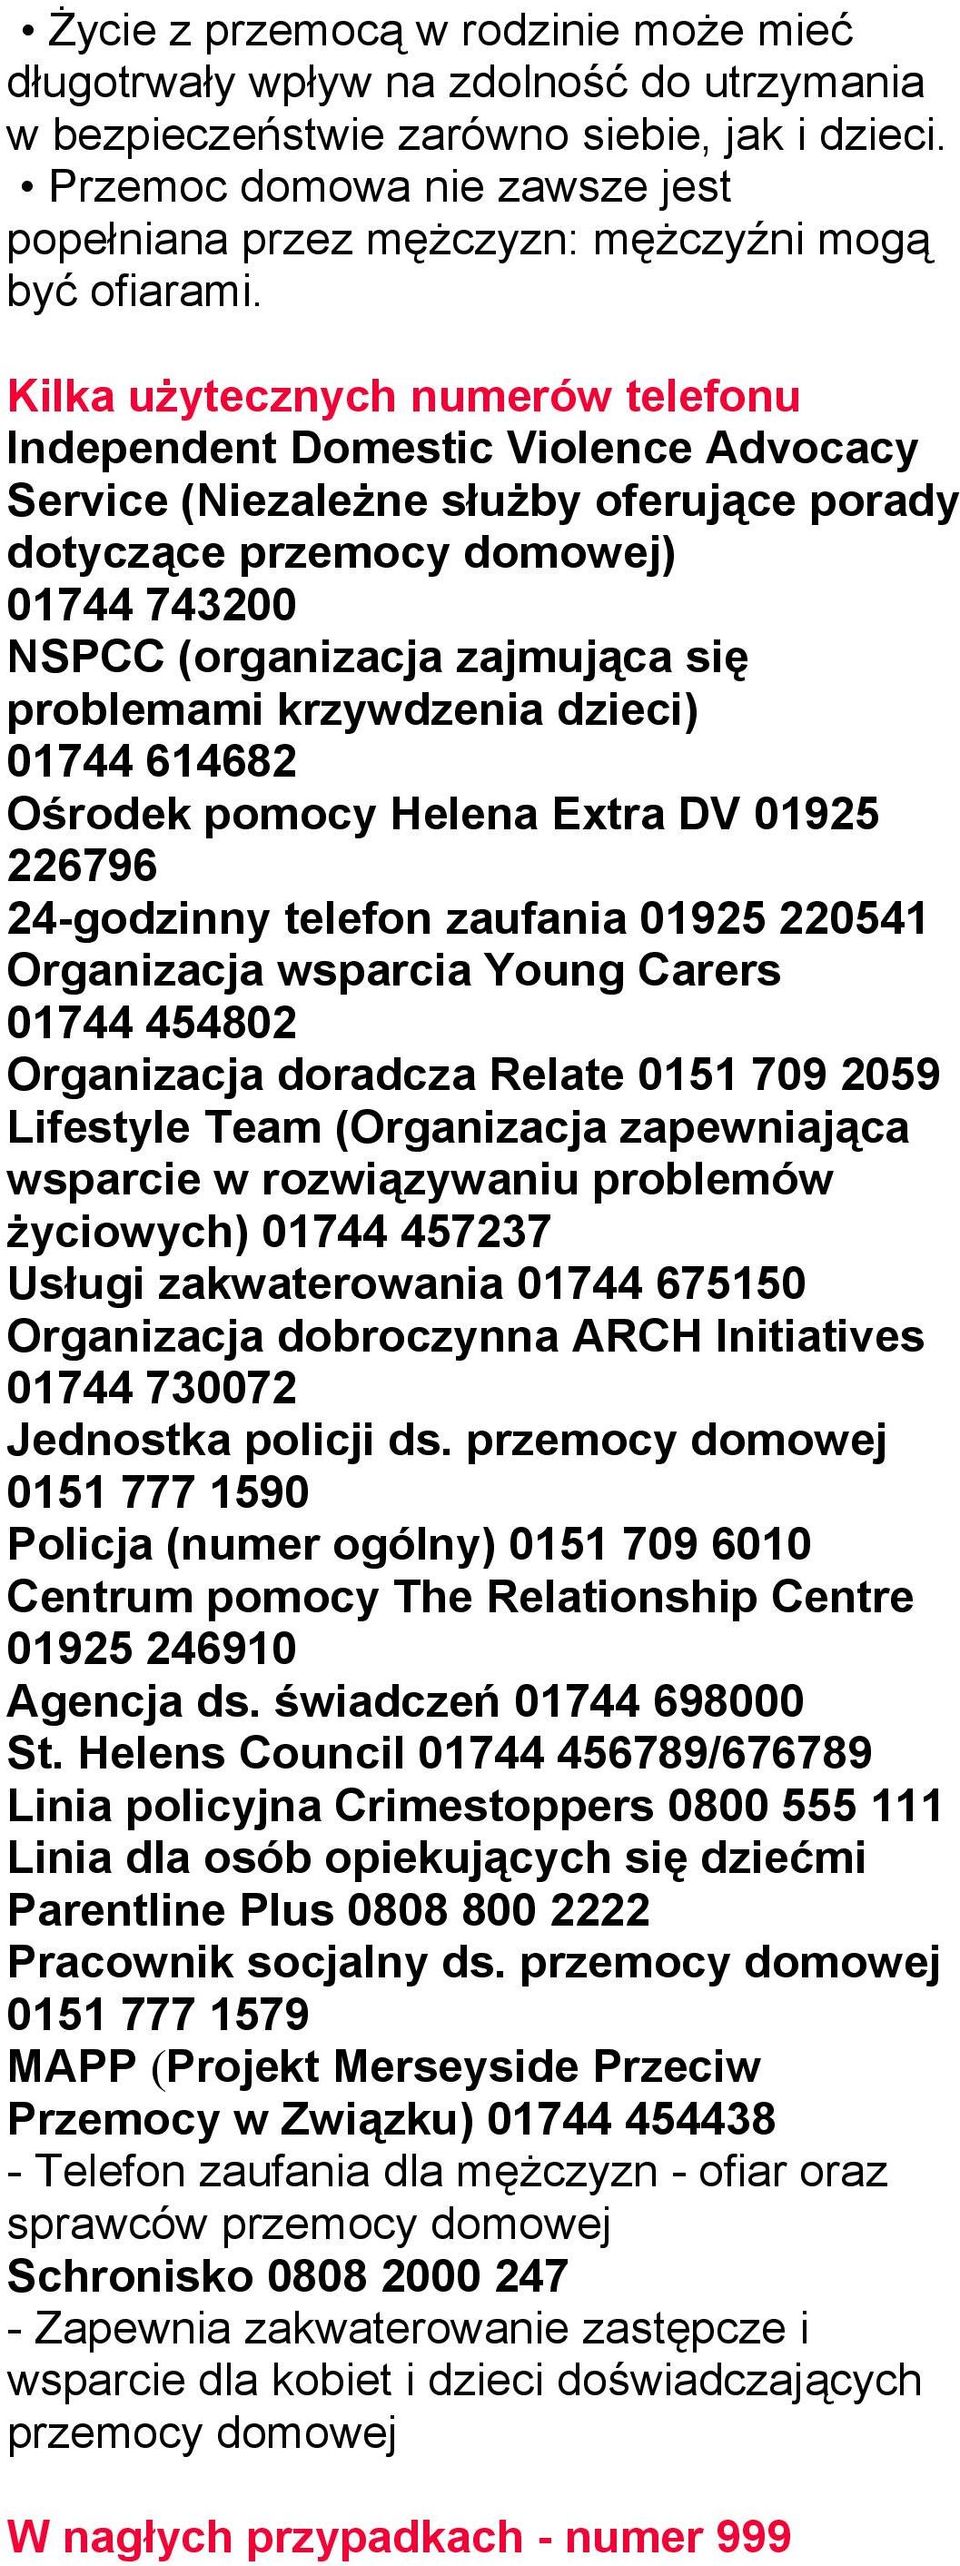 Kilka użytecznych numerów telefonu Independent Domestic Violence Advocacy Service (Niezależne służby oferujące porady dotyczące przemocy domowej) 01744 743200 NSPCC (organizacja zajmująca się